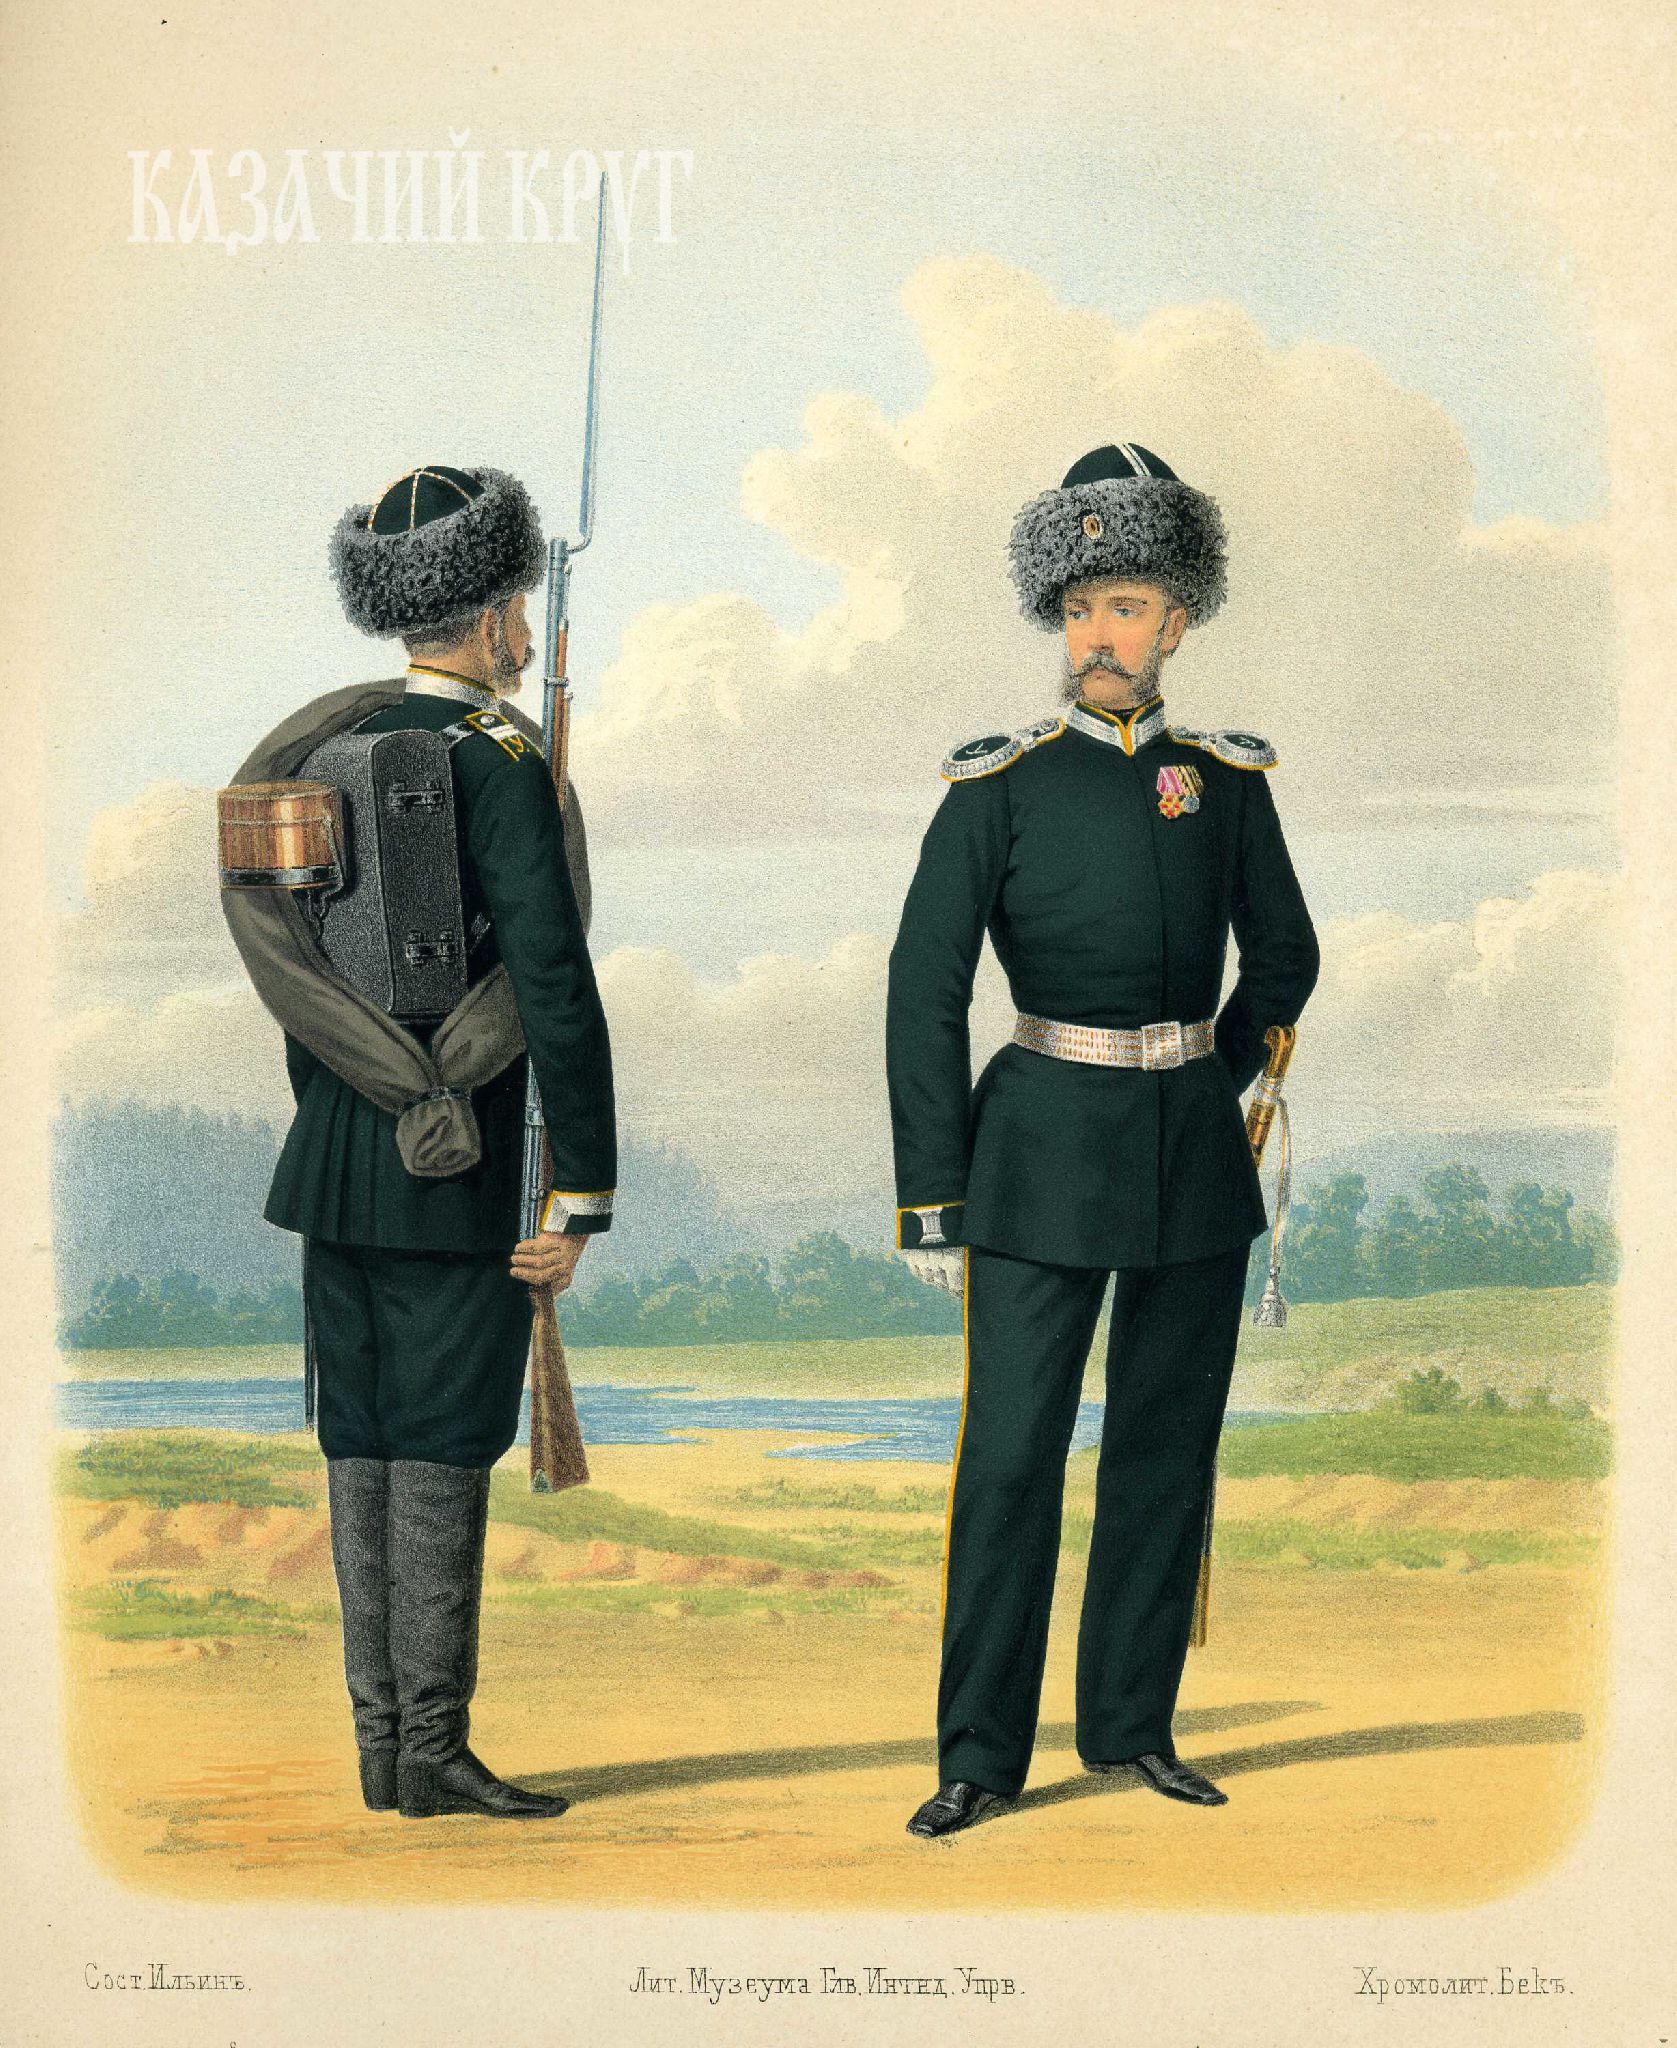 Пешие батальоны Амурского казачьего войска. Унтер-офицер (походная форма) и обер-офицер (парадная форма). 20 января 1876 г.